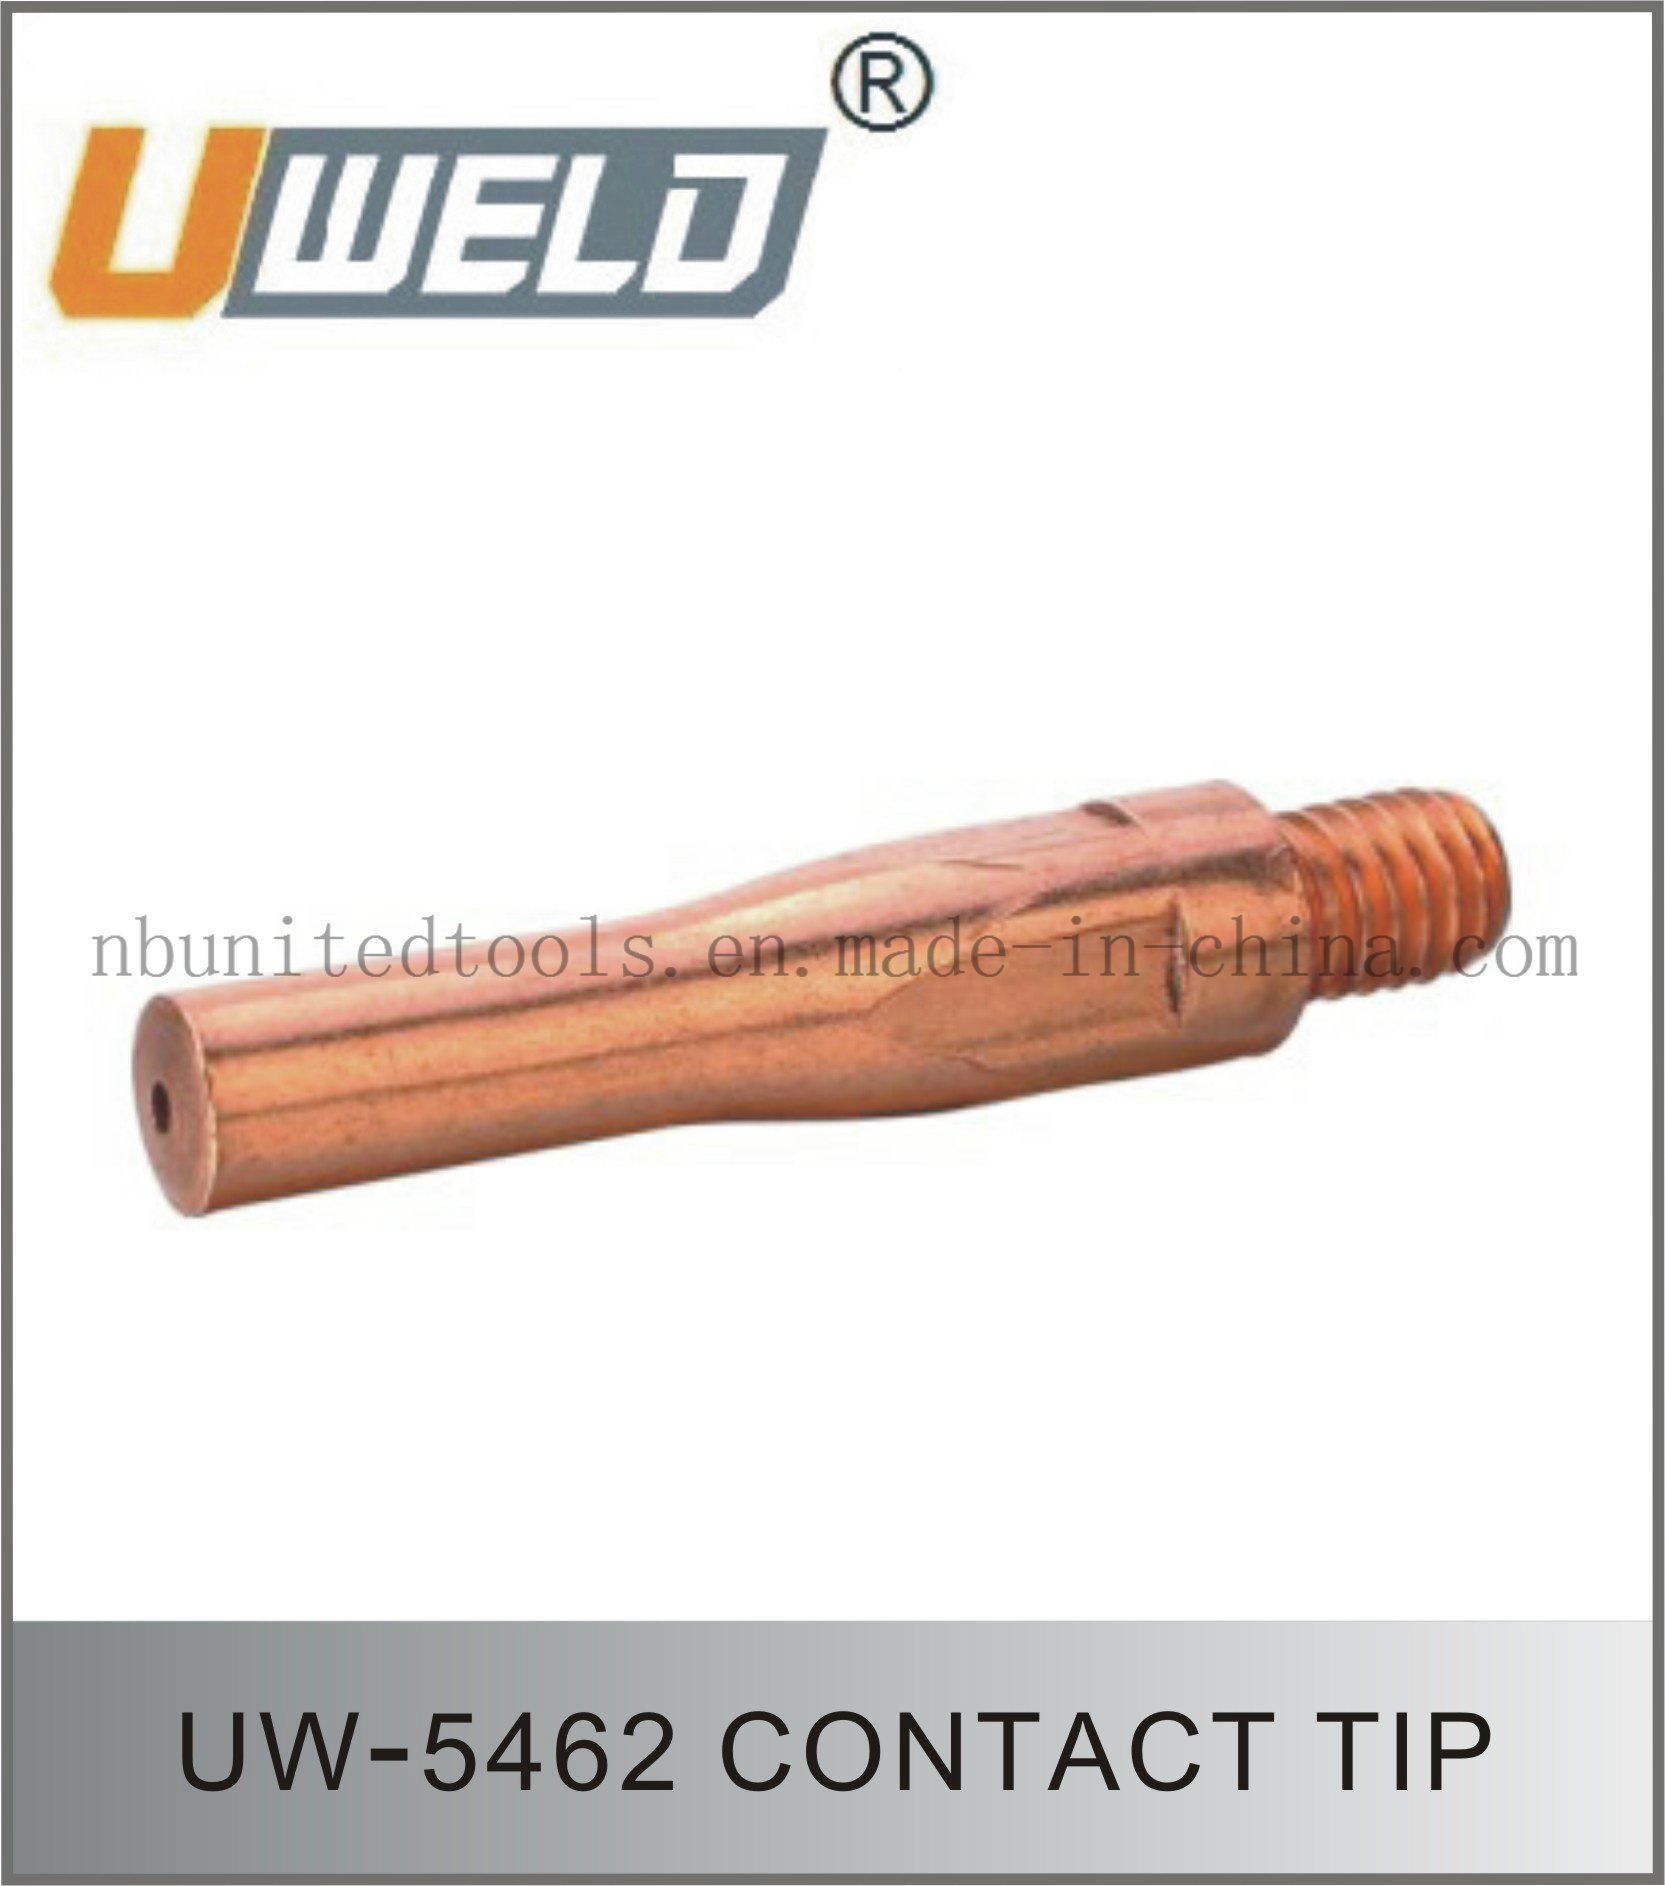 Contact Tip Uw-5462